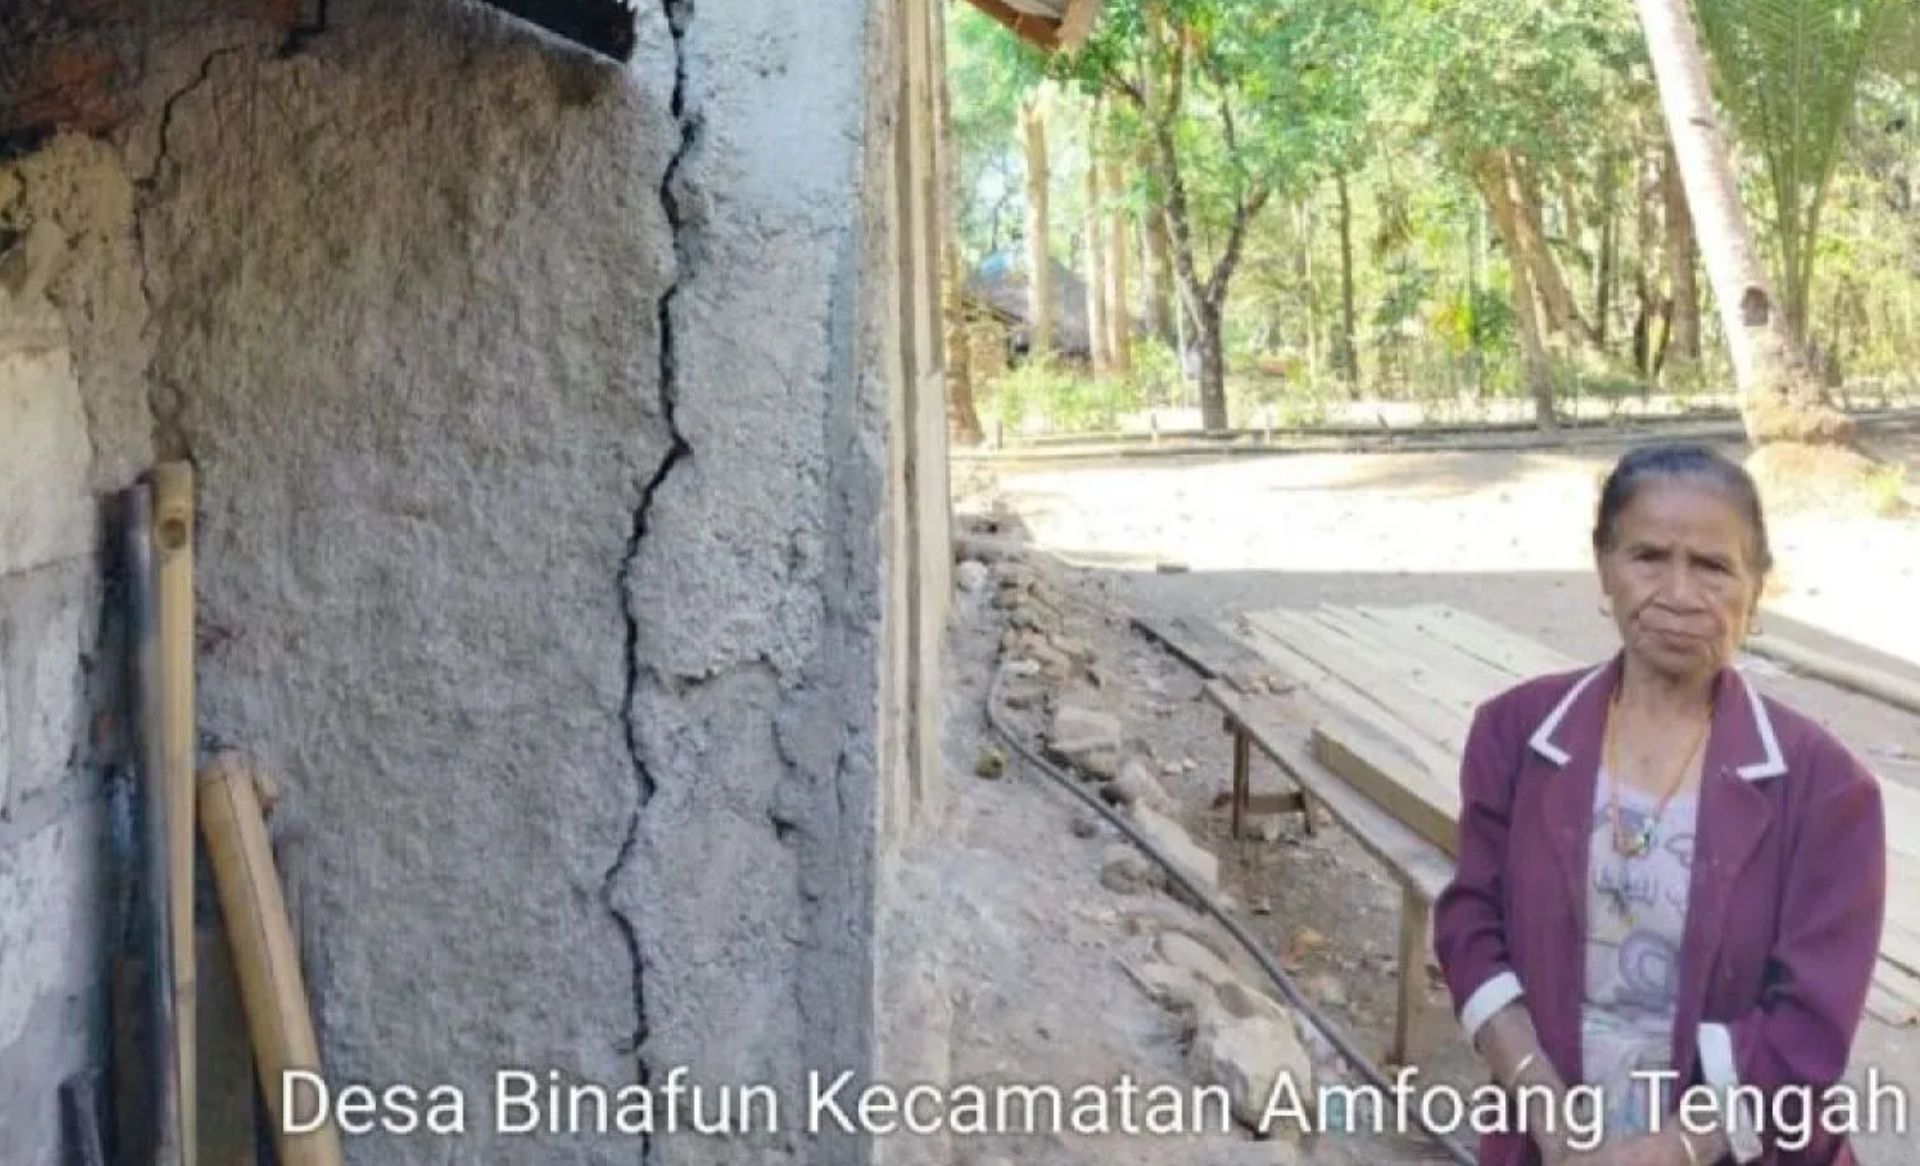 Rumah warga Desa Binafun rusak akibat gempa magnitudo 6,1 di Pulau Timor.//